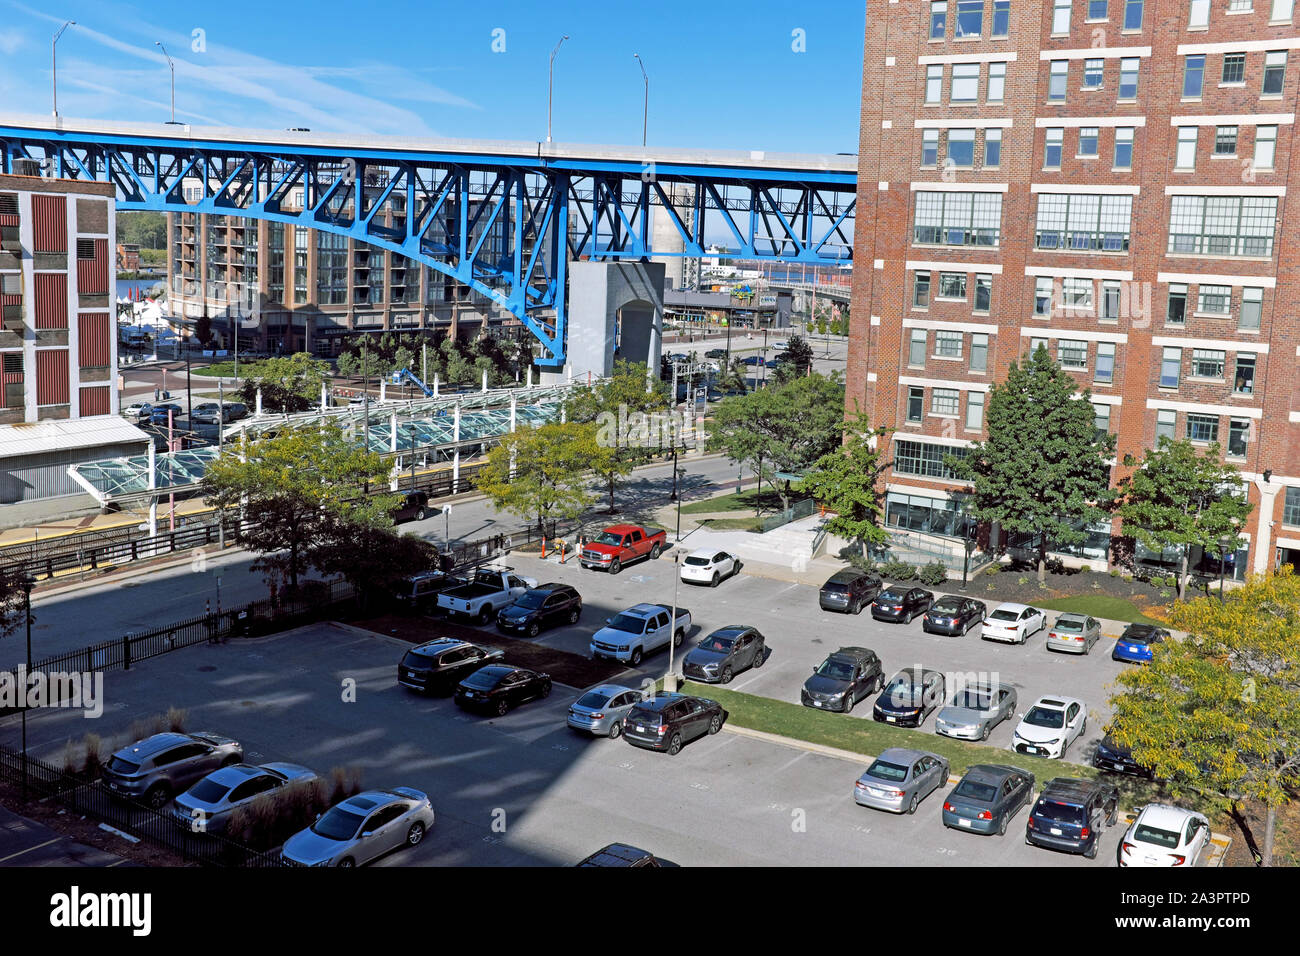 Une vue partielle de la rive est de l'Appartements avec le Pont de l'avenue principale, un pont en treillis cantilever, traversant la rivière Cuyahoga à Cleveland, Ohio. Banque D'Images